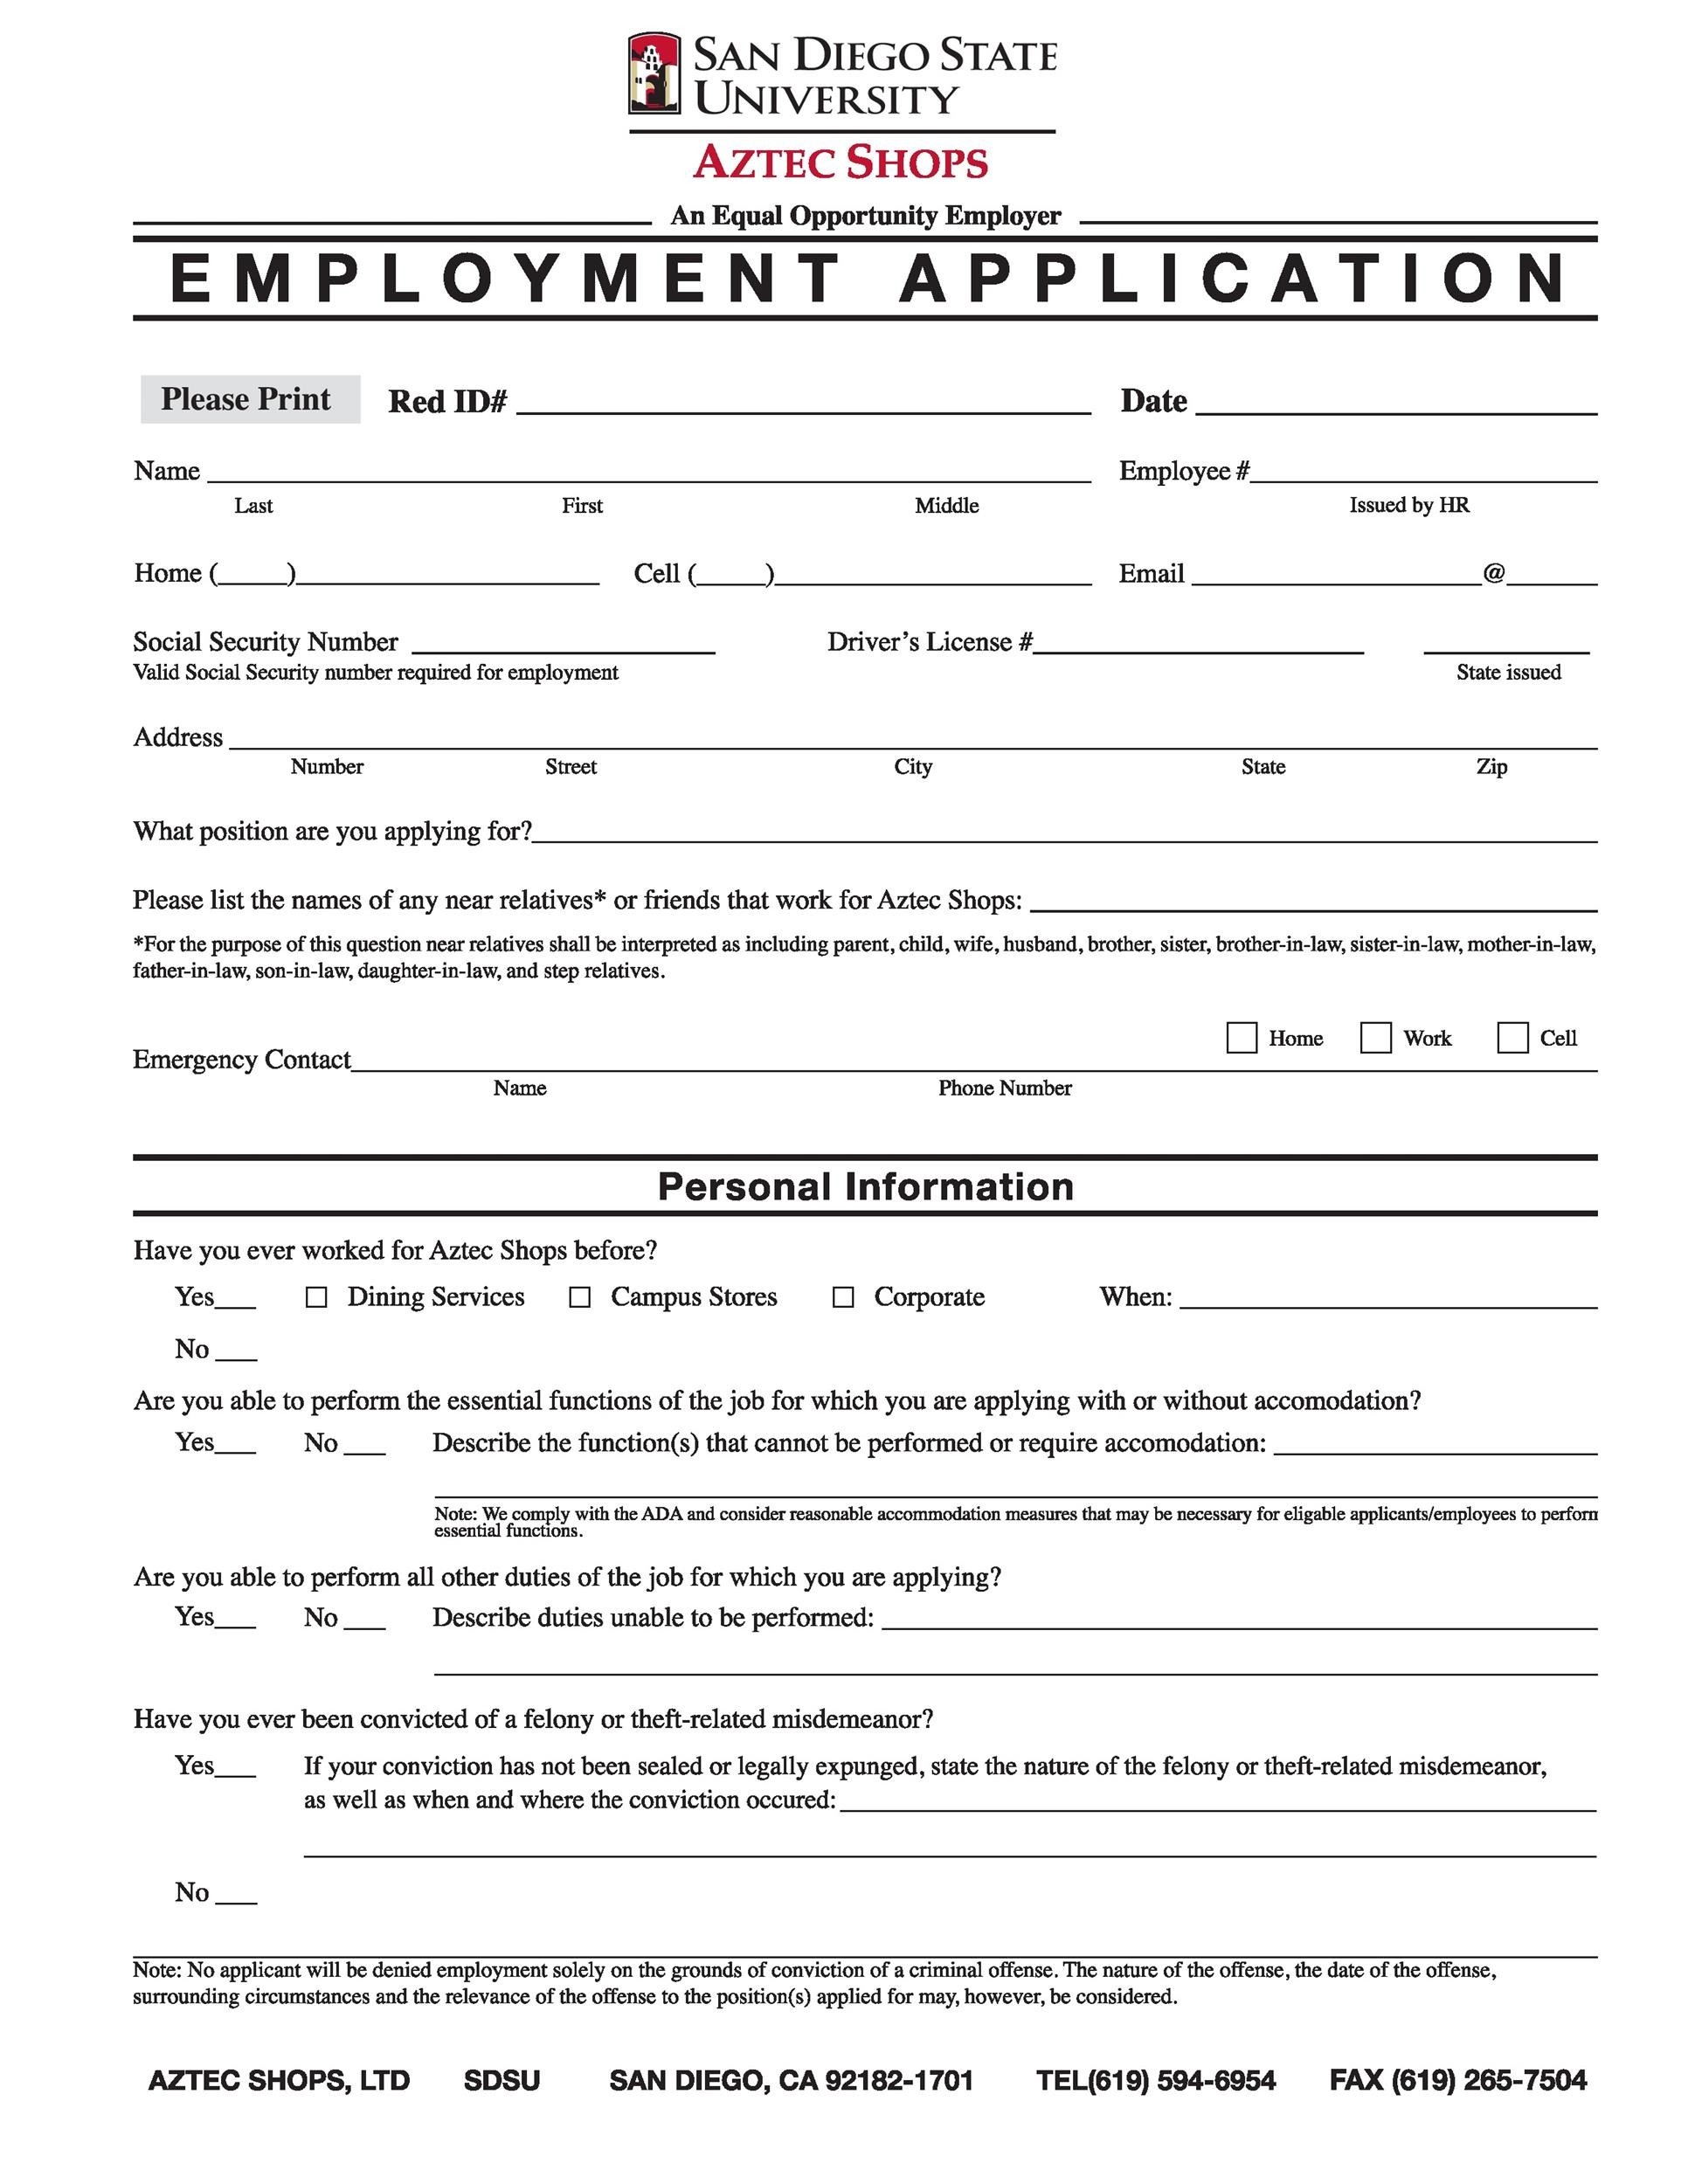 Free Editable And Printable Job Application Forms - Printable Forms ...